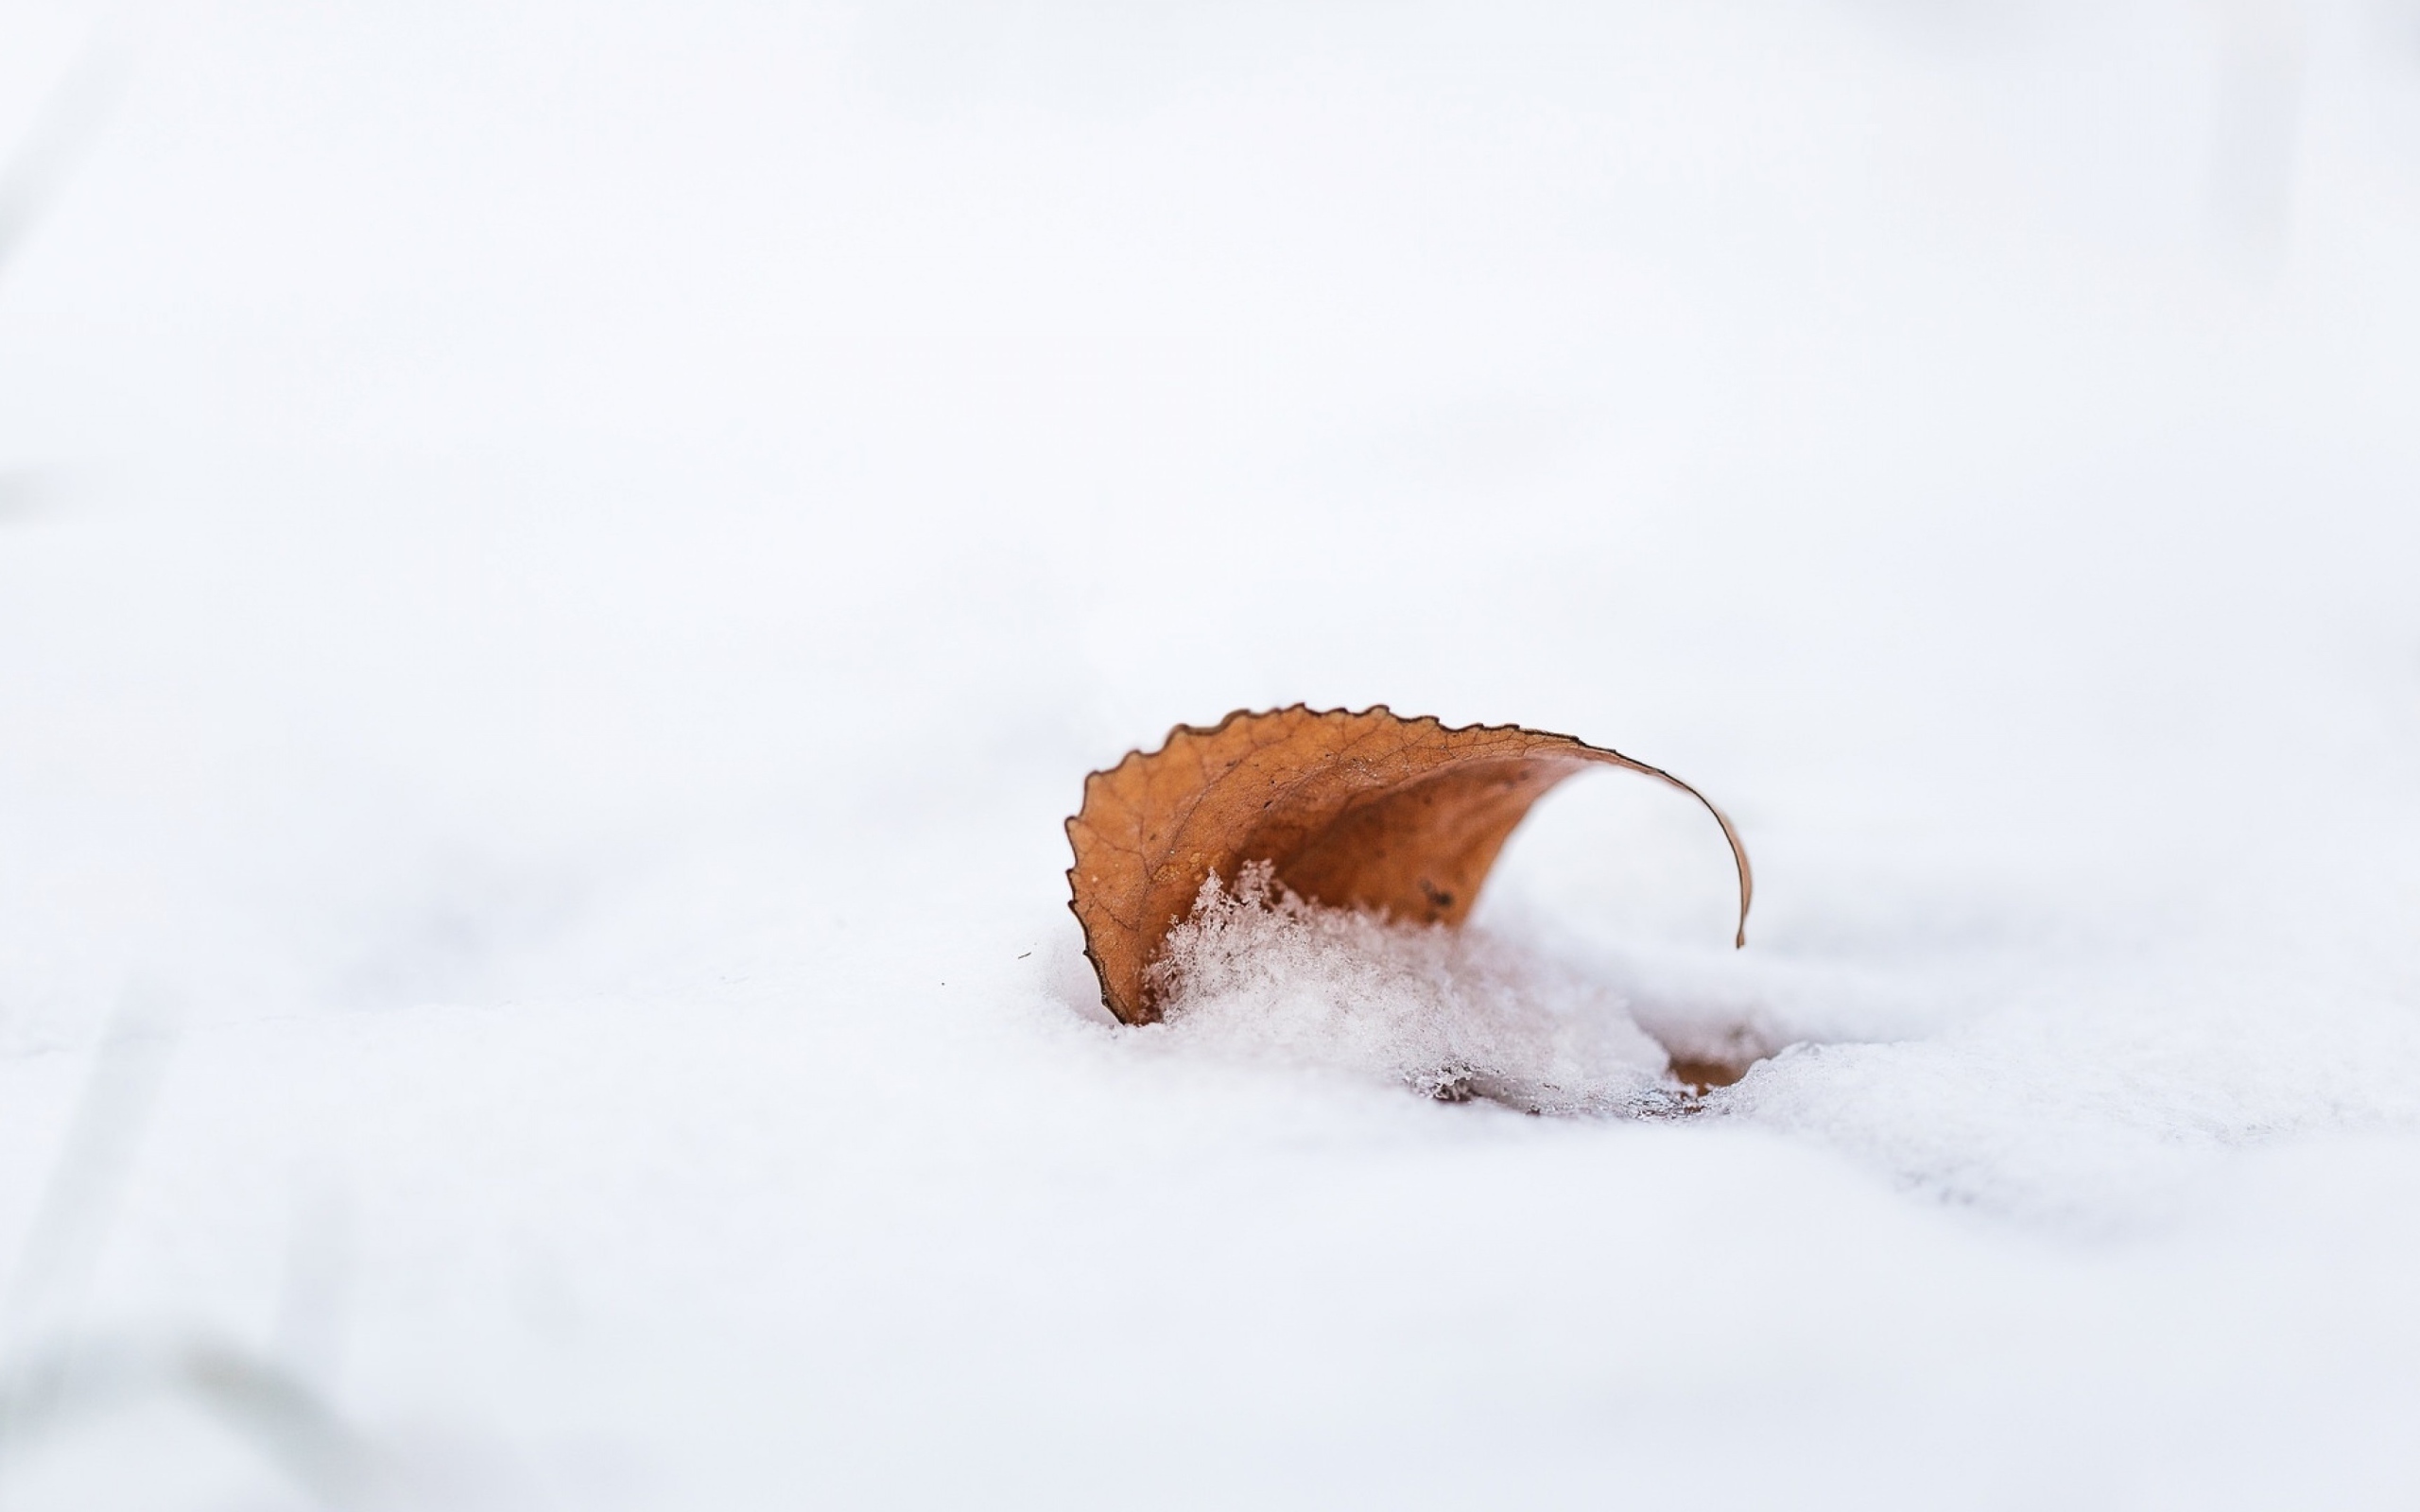 Оранжевый опавший лист лежит на снегу